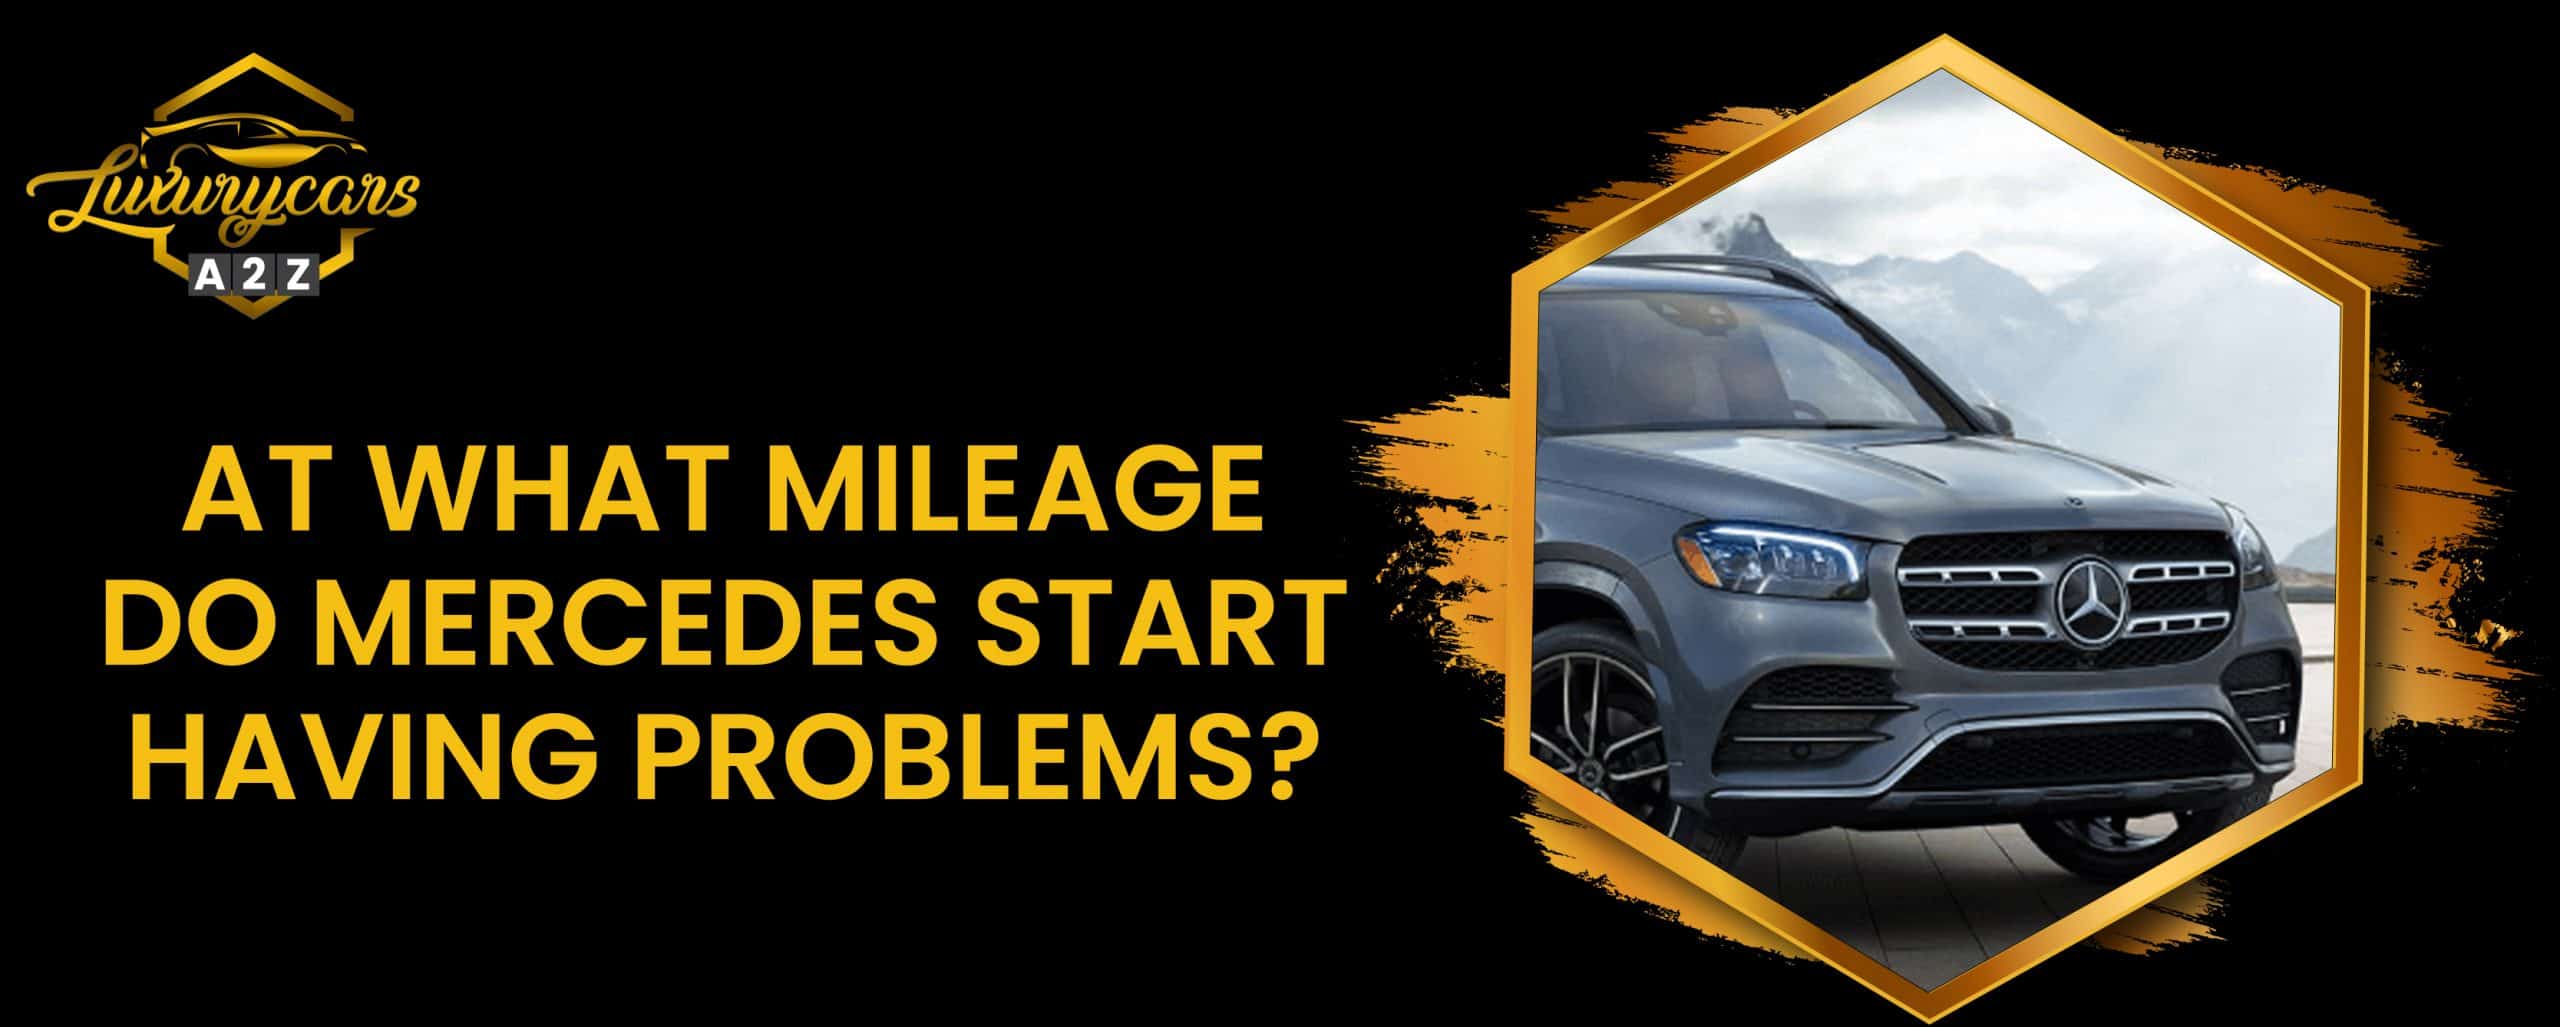 À partir de quel kilométrage les Mercedes commencent-elles à avoir des problèmes ?